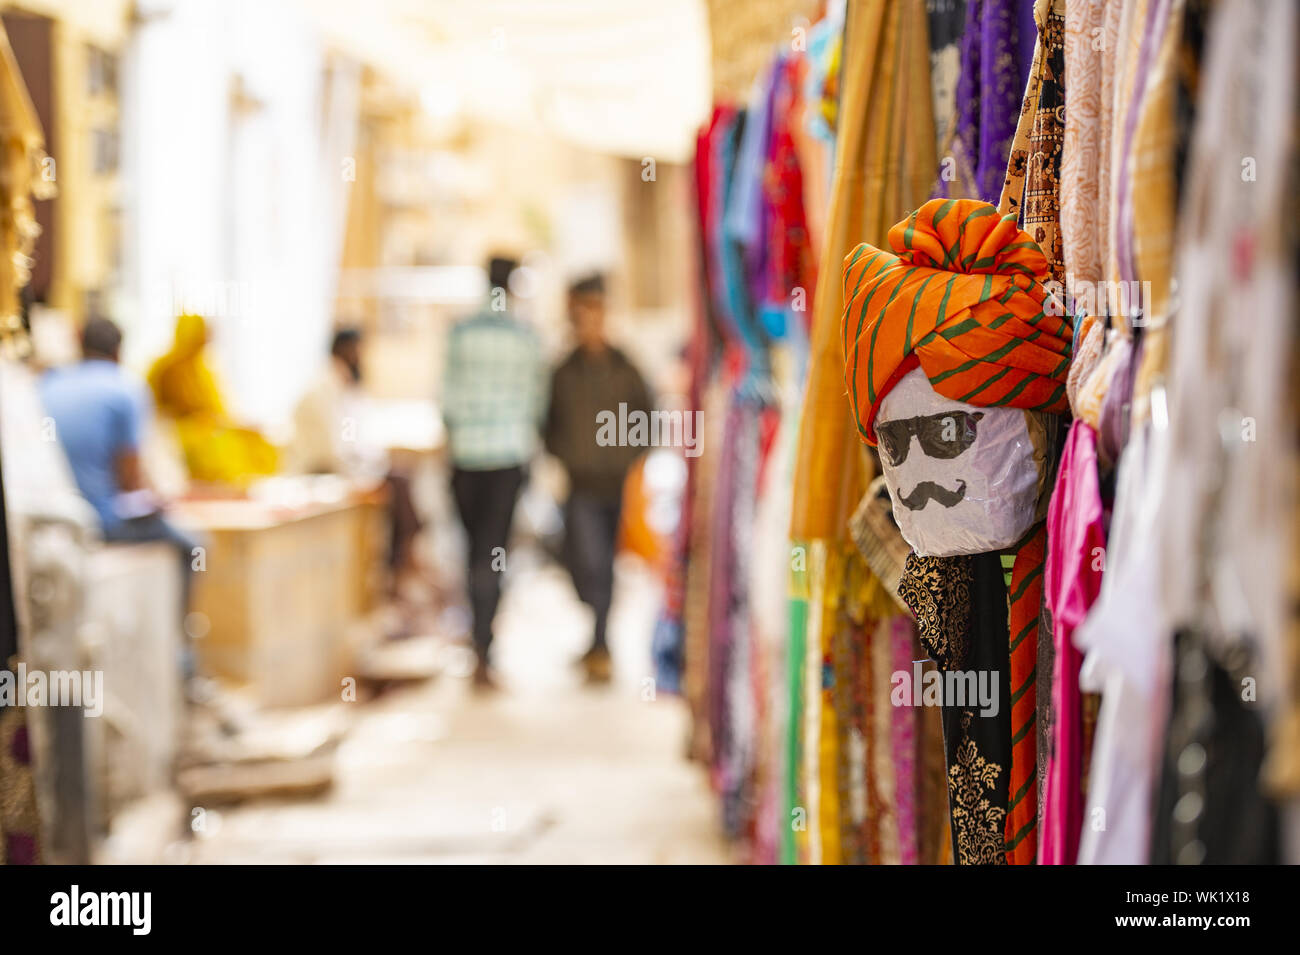 (Selektive Fokus) Schöner Shop mit bunte traditionelle indische Kleidung (Sari) und eine Maske zeigt das Gesicht einer Person aus Rajasthan. Jaisalmer, Indien Stockfoto